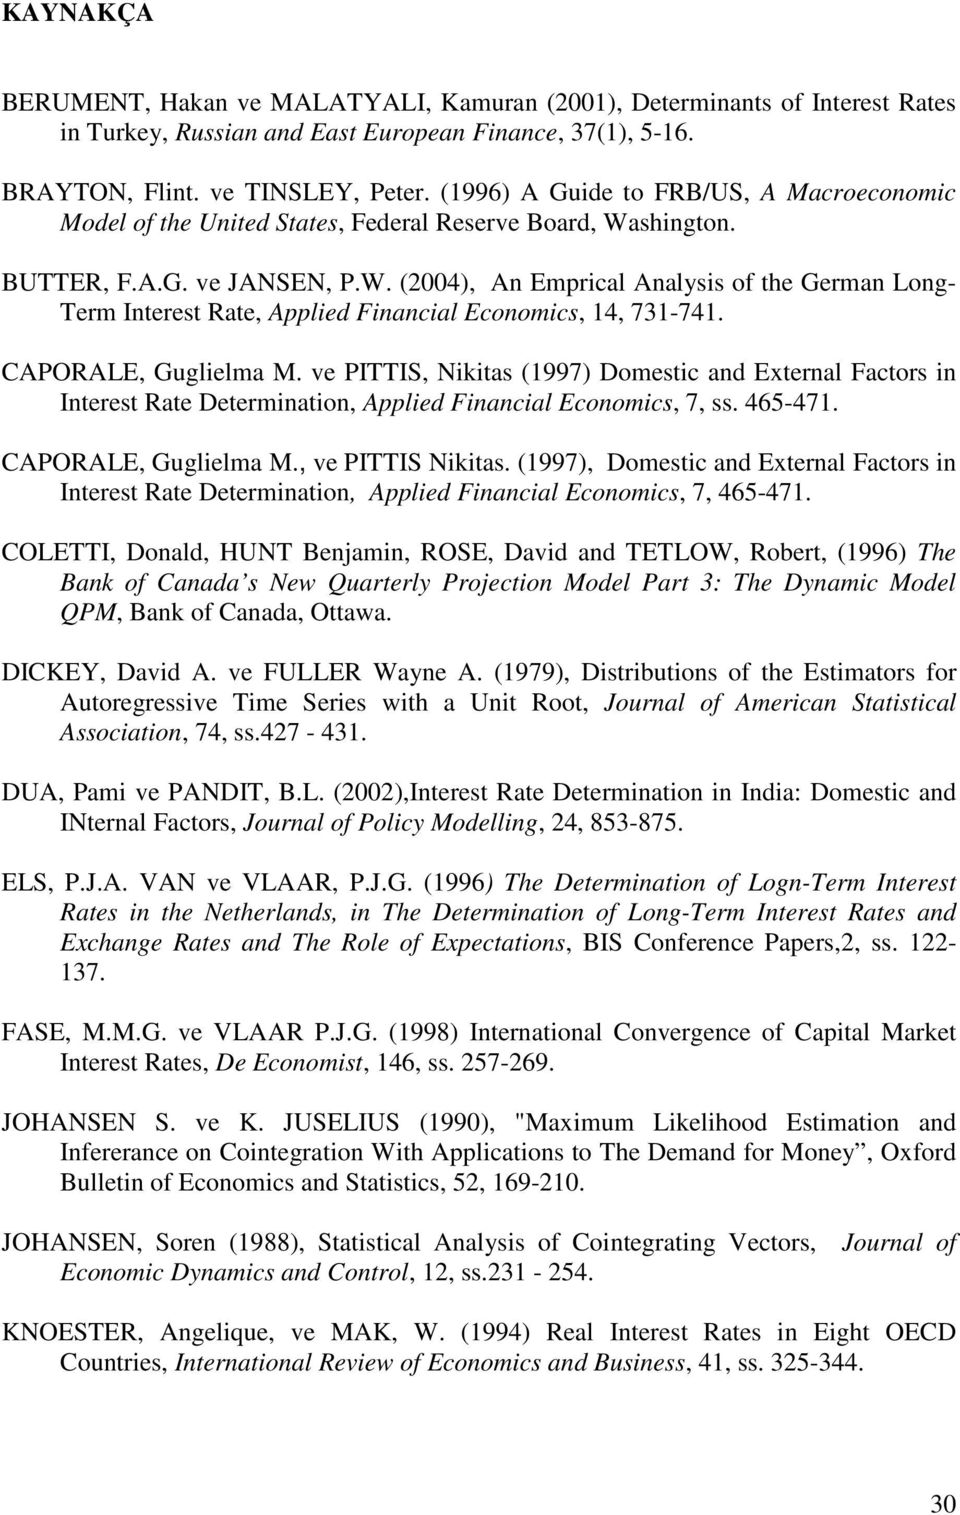 CAPORALE, Guglielma M. ve PITTIS, Nikias (1997) Domesic and Exernal Facors in Ineres Rae Deerminaion, Applied Financial Economics, 7, ss. 465-471. CAPORALE, Guglielma M., ve PITTIS Nikias.